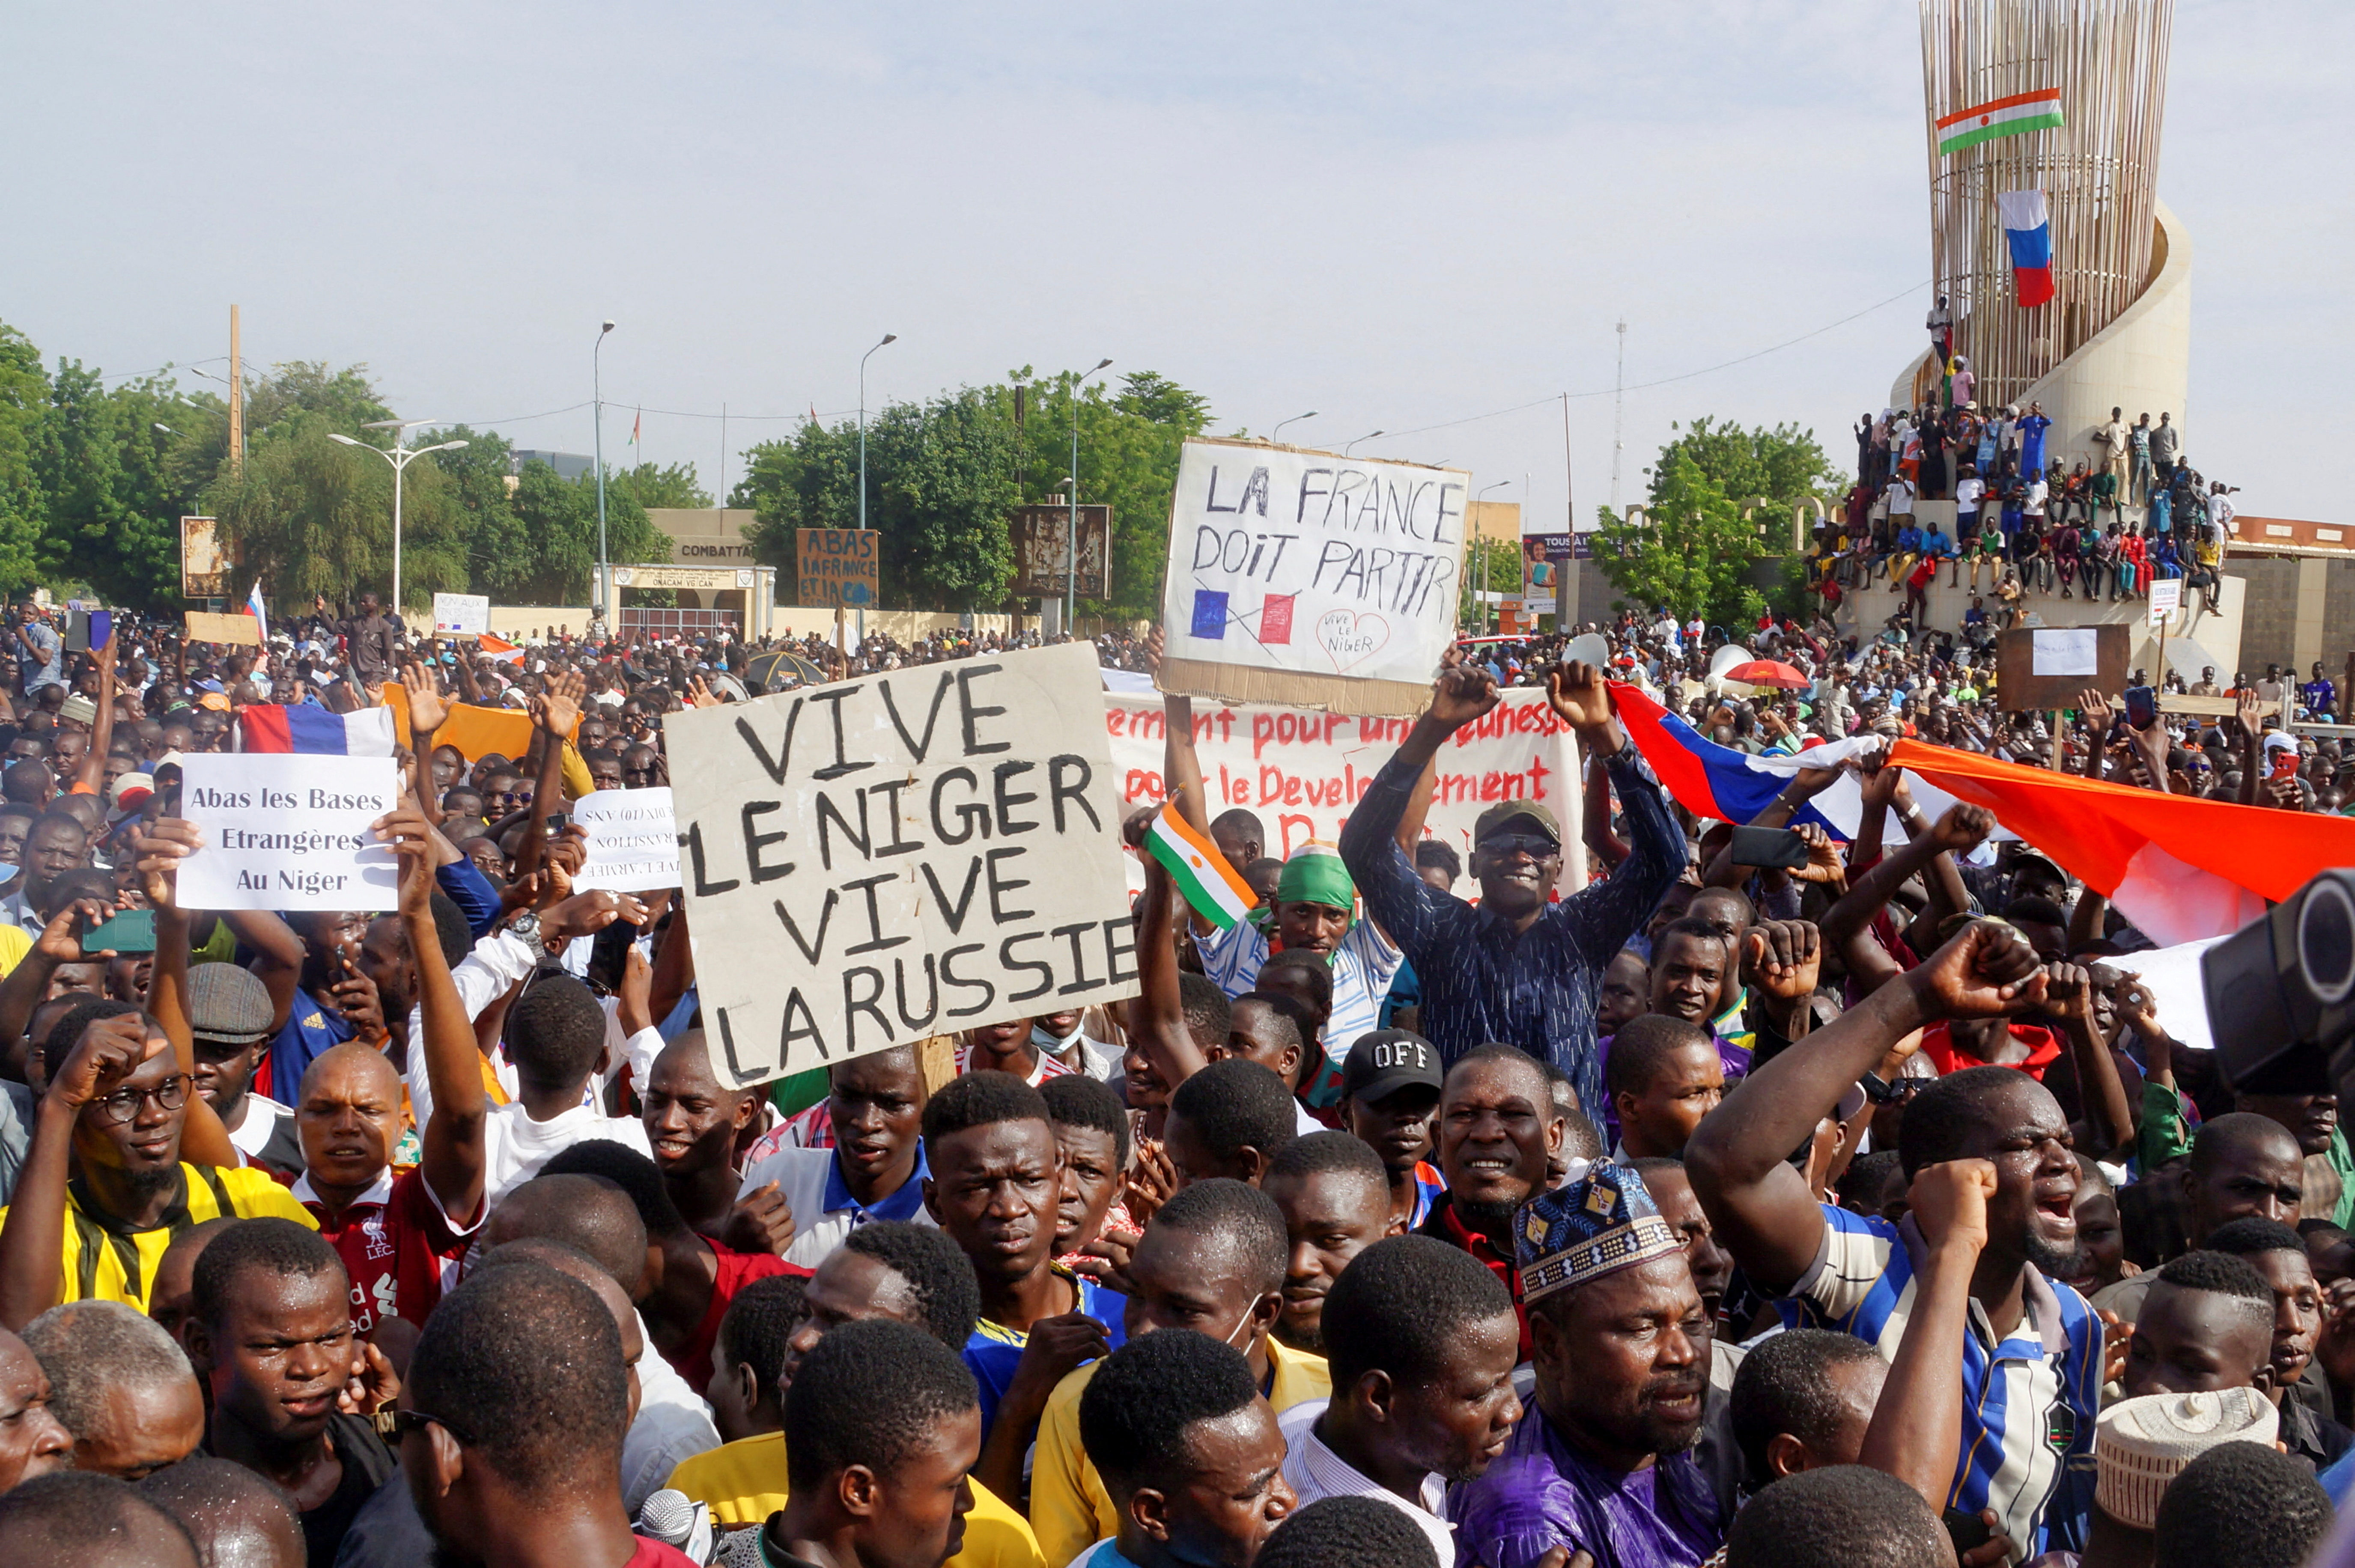 جريدة “لوفيغارو” الفرنسية: “فرنسا تخسر عملية ليّ الأذرع مع الانقلابيين في النيجر”